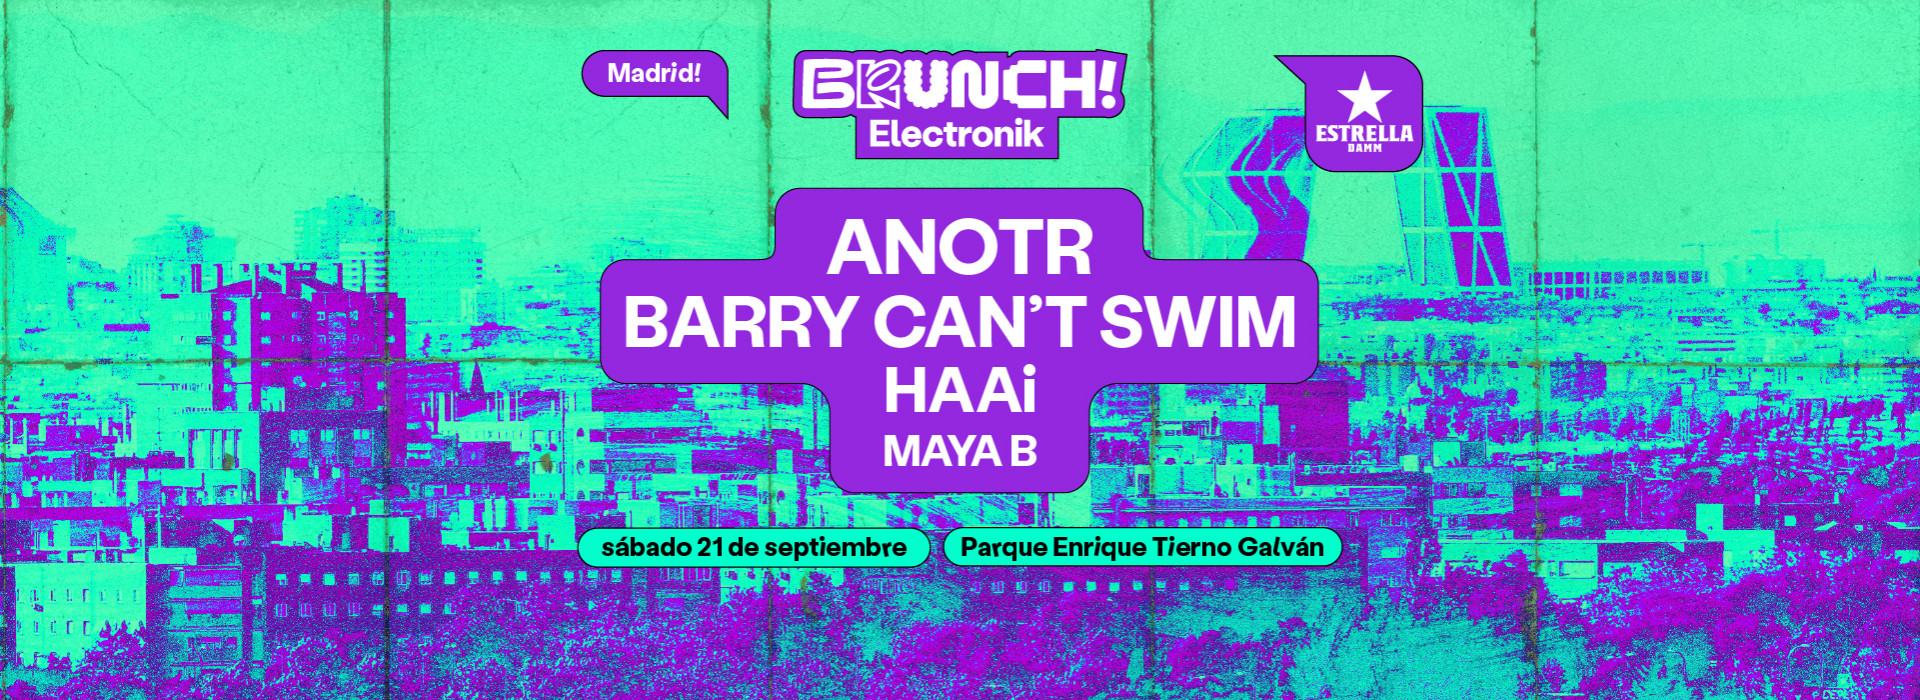 Brunch Electronik Madrid #9: ANOTR, Barry Can't Swin, HAAi & Maya B